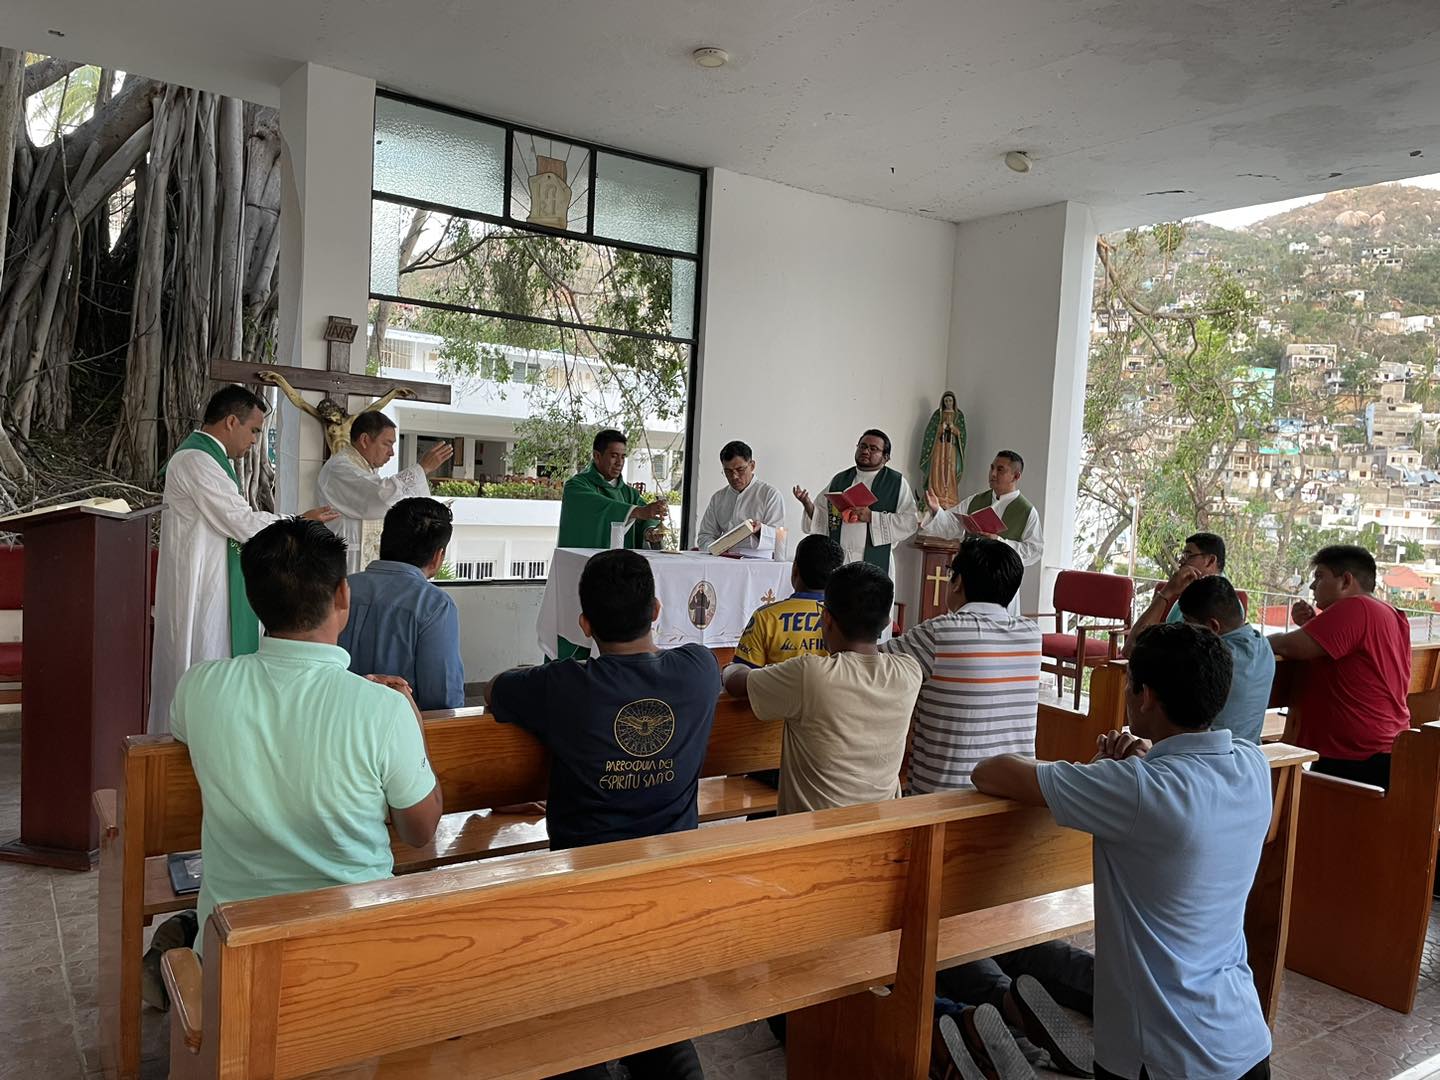 Primera Misa en el Seminario después del Huracán. Foto: Seminario del Buen Pastor.